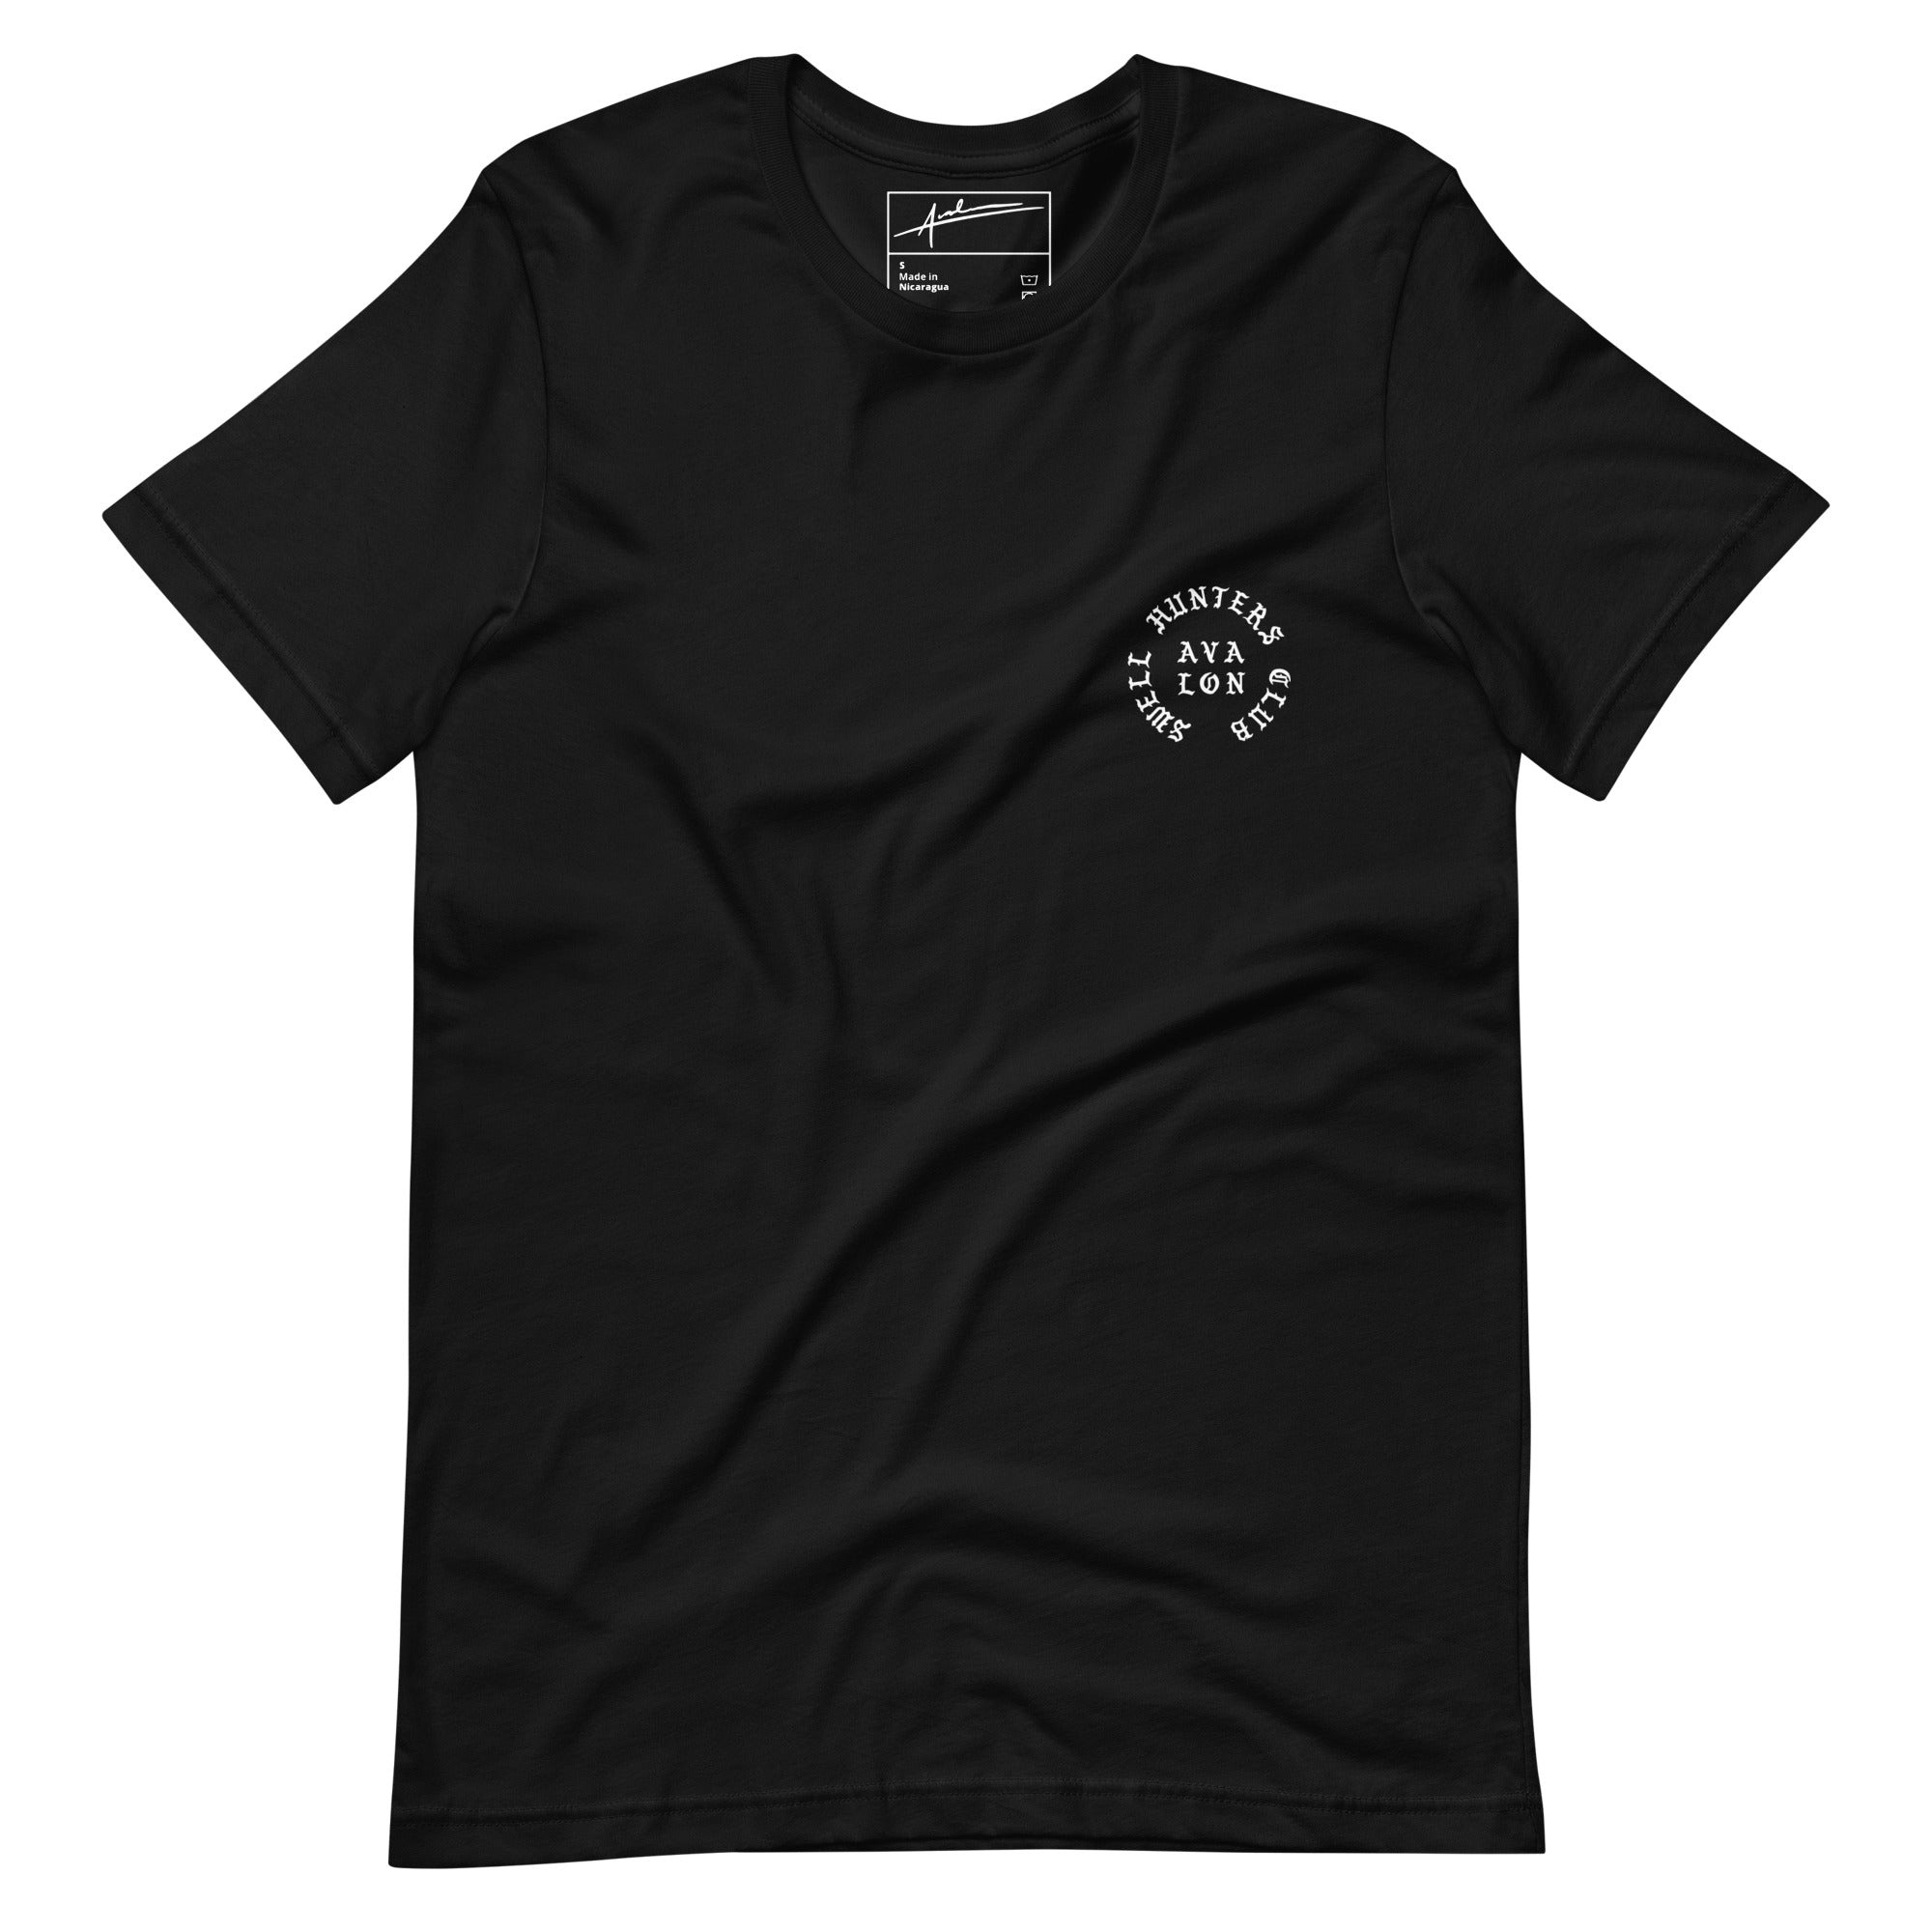 SH Originals Unisex T-Shirt in Black